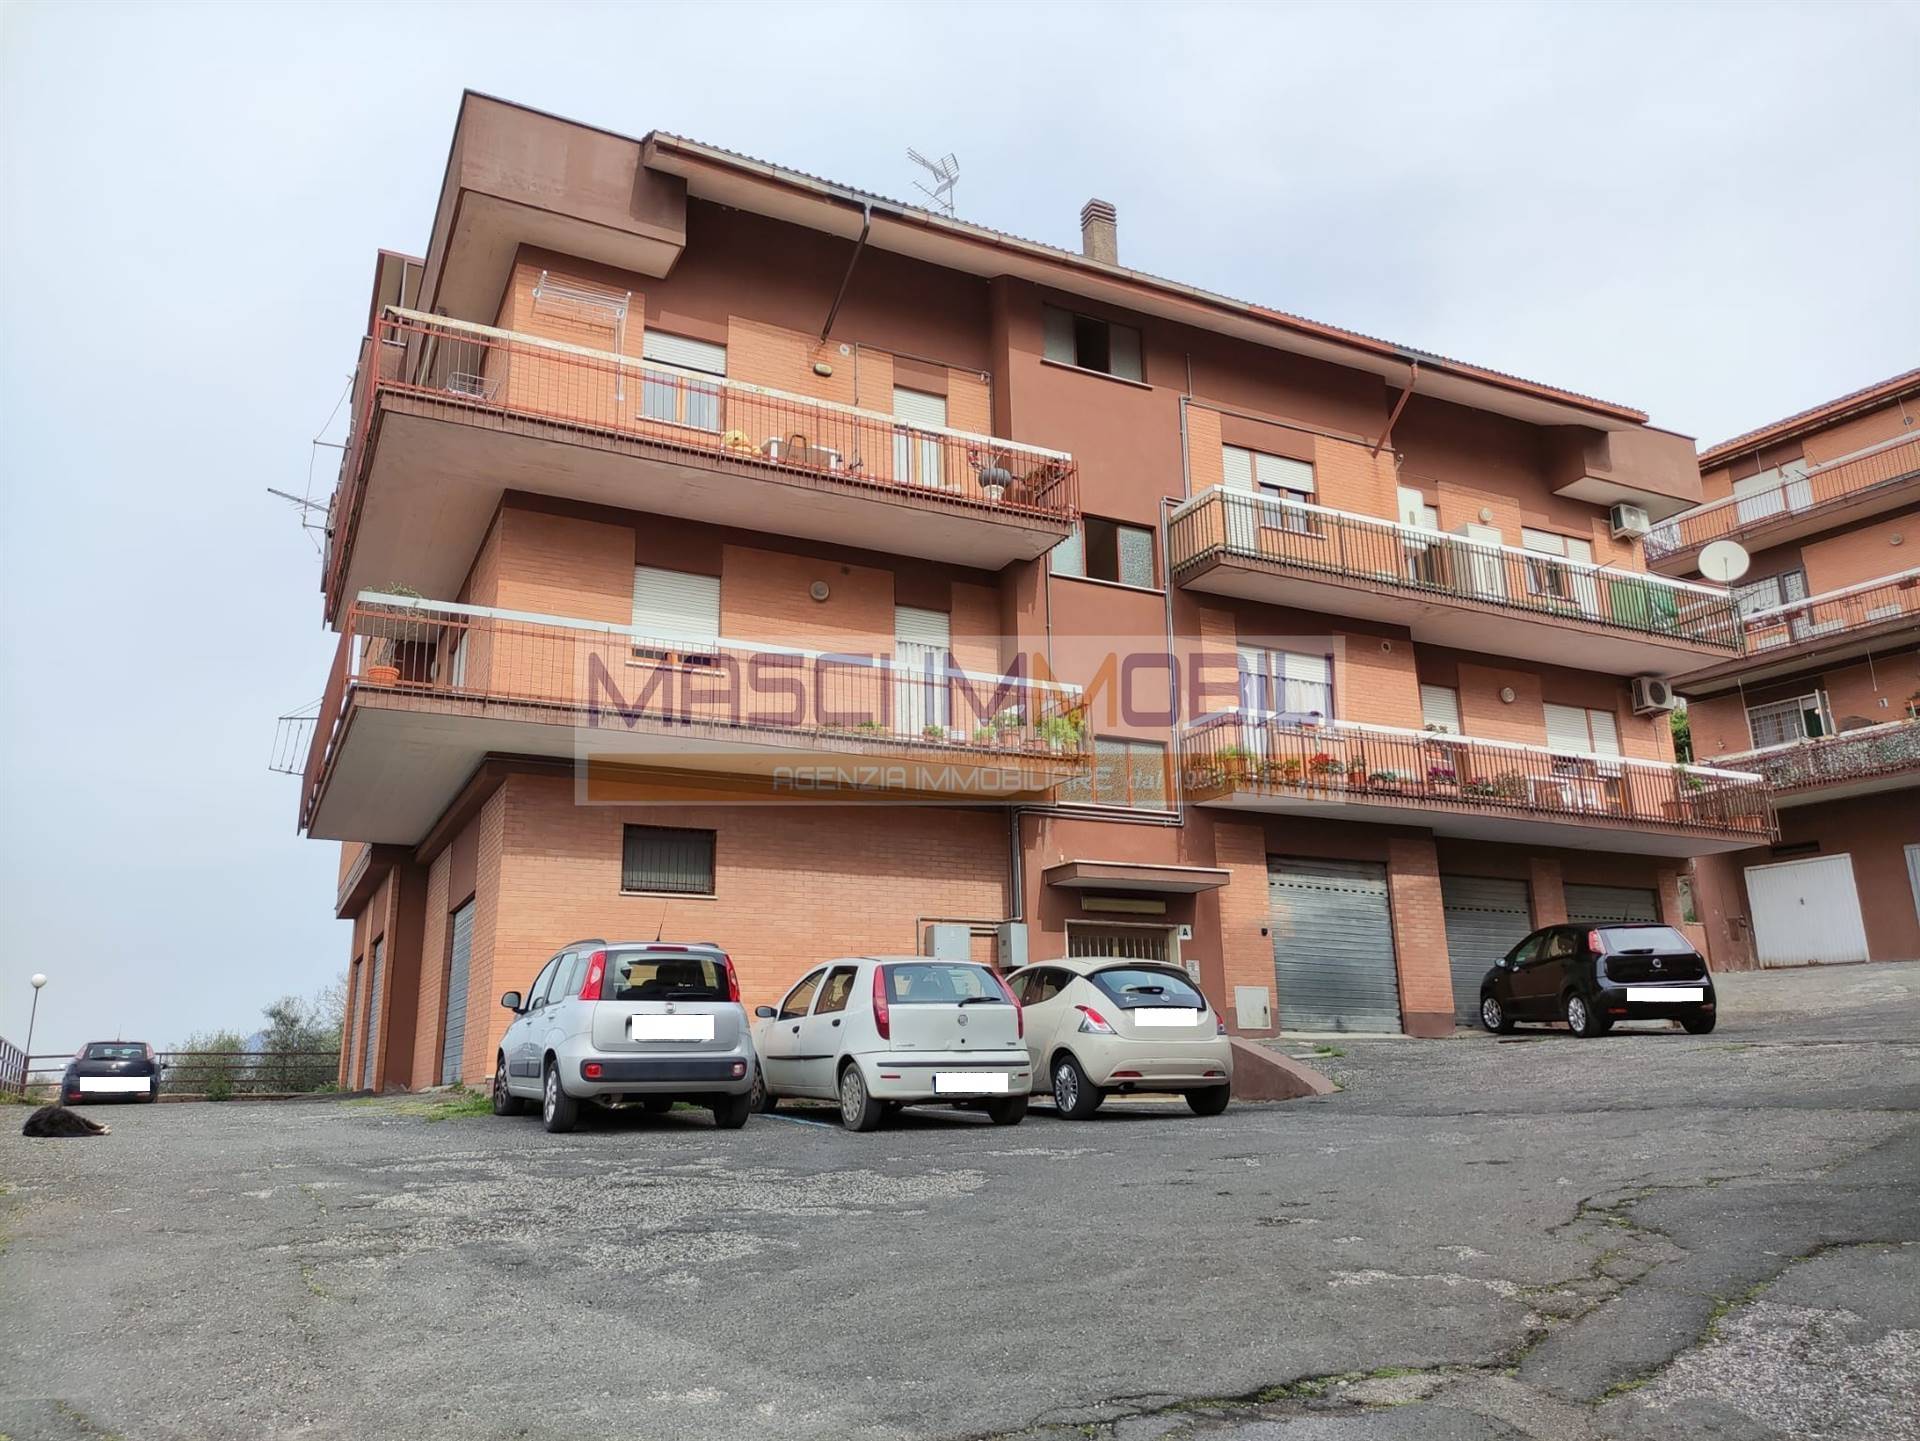 Appartamento in vendita a Civitella San Paolo, 3 locali, prezzo € 75.000 | CambioCasa.it